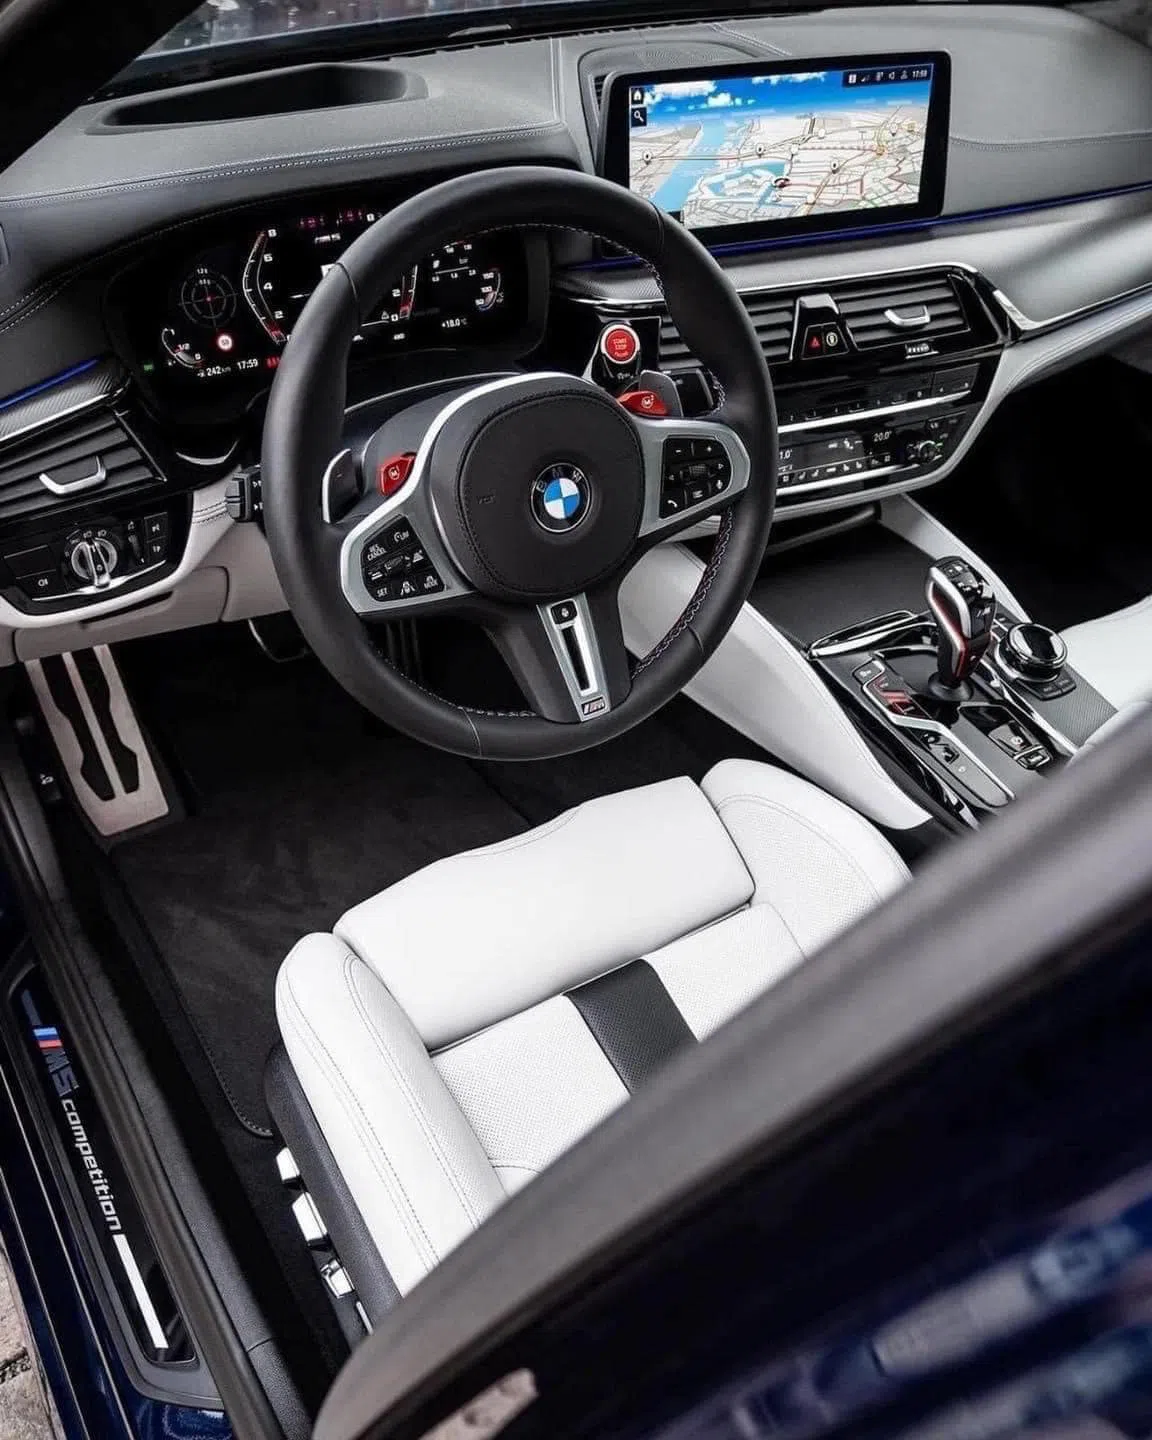 Cận cảnh chiếc BMW M5 chỉ 7 tỷ: Xế sang thế hệ mới rẻ chưa từng có